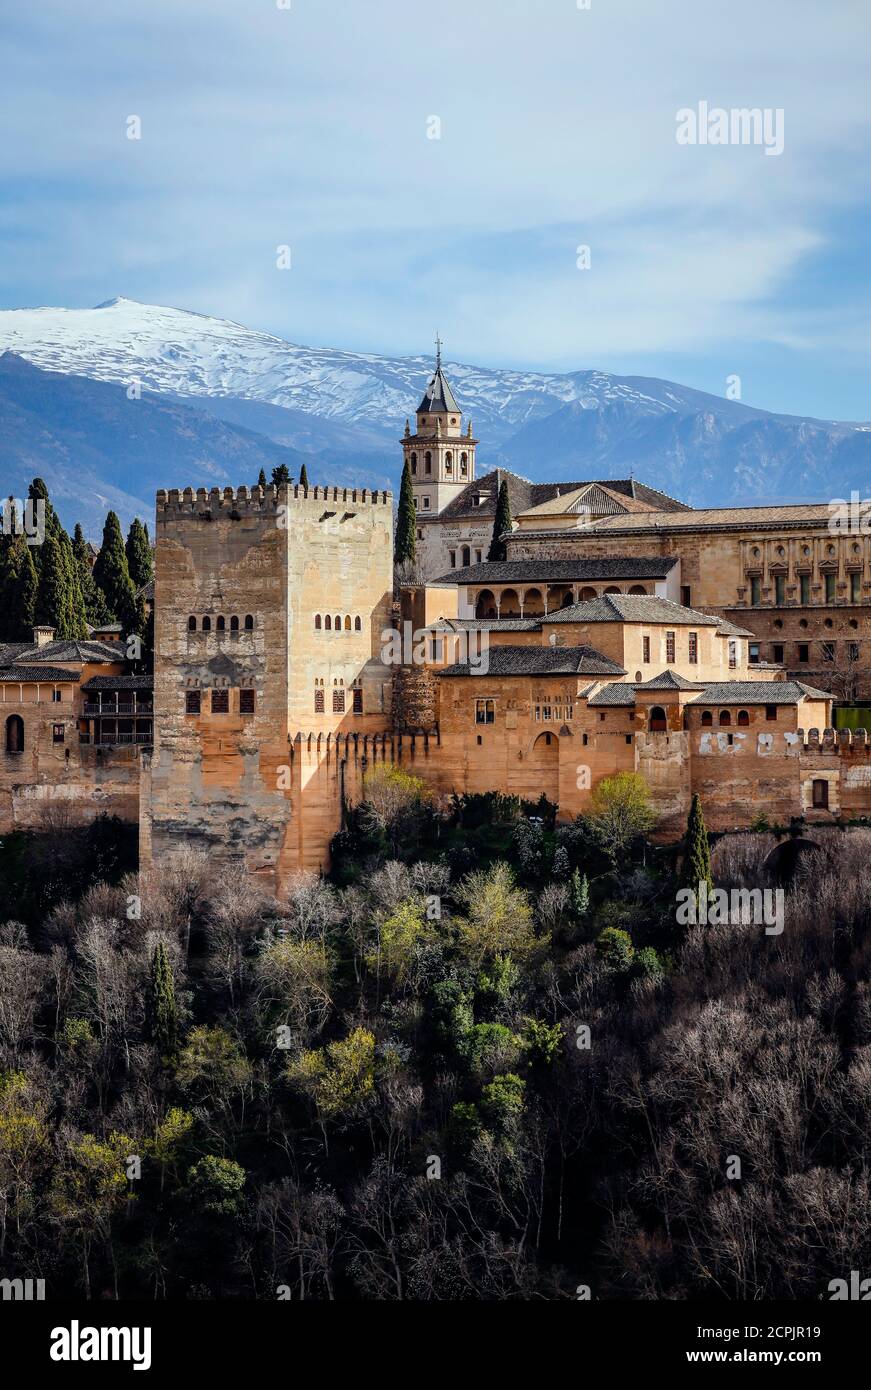 Alhambra Castillo de la Ciudad Morisca, Palacios Nazaríes, Palacio Carlos V, Sierra Nevada cubierta de nieve en la espalda, Granada, Andalucía, España Foto de stock